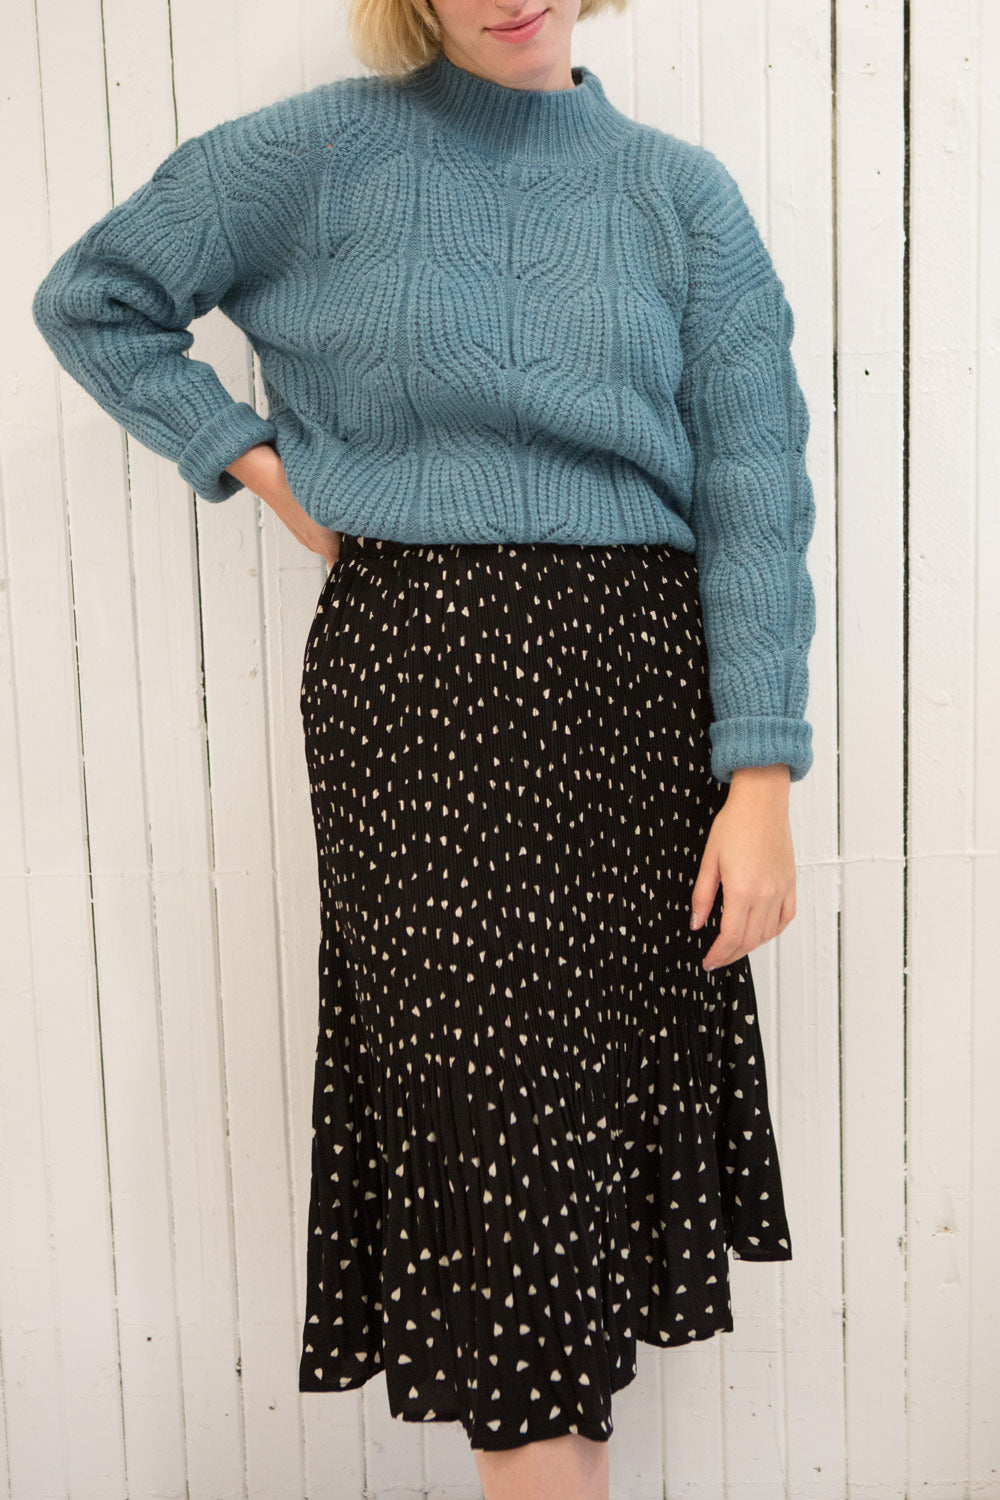 Canchagua Blue Mock Neck Knit Sweater | La petite garçonne model